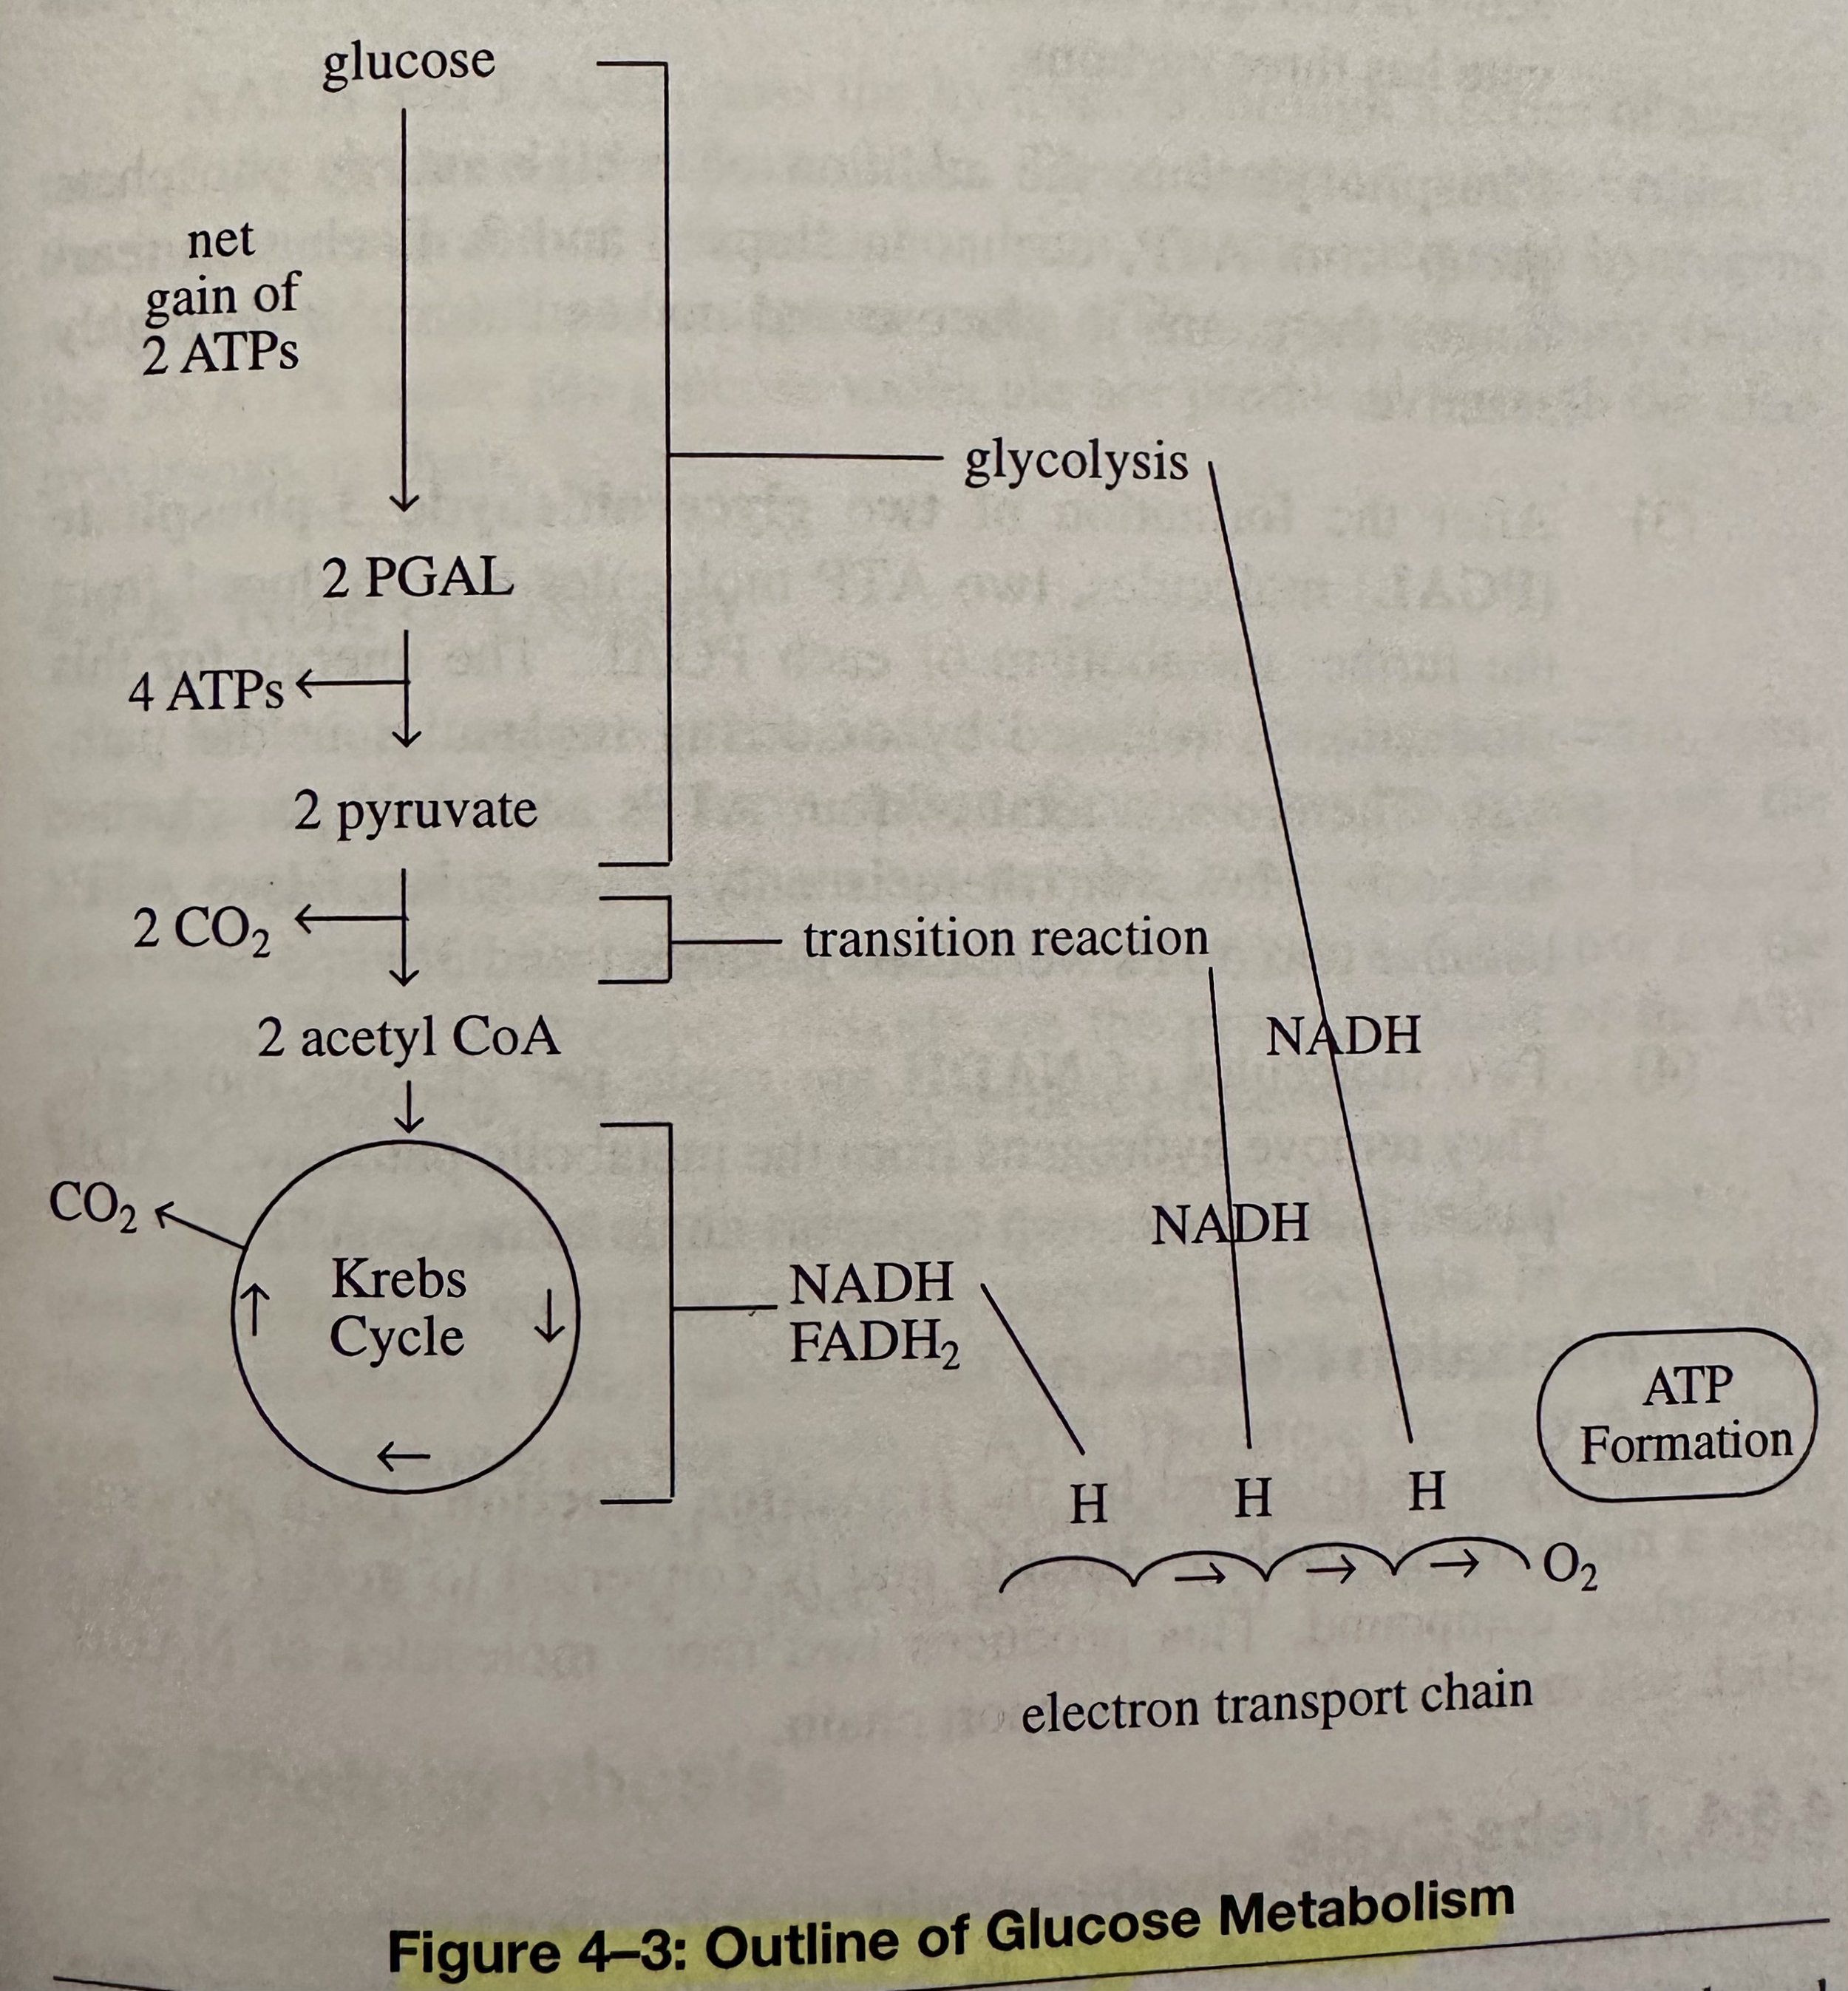 Outline of Glucose Metabolism.jpeg